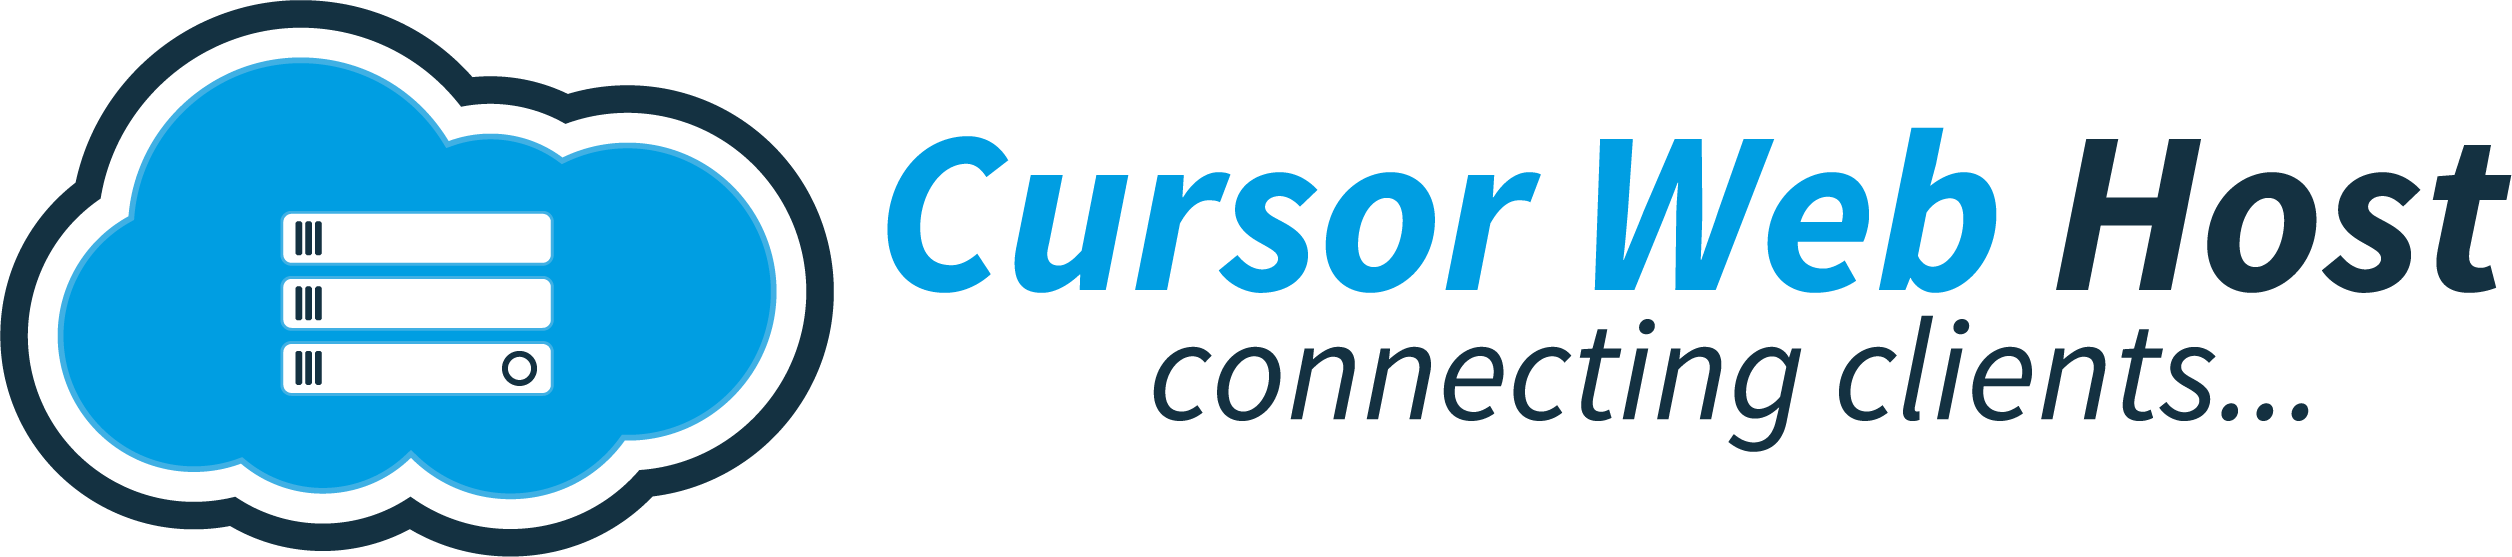 Cursor Web Host